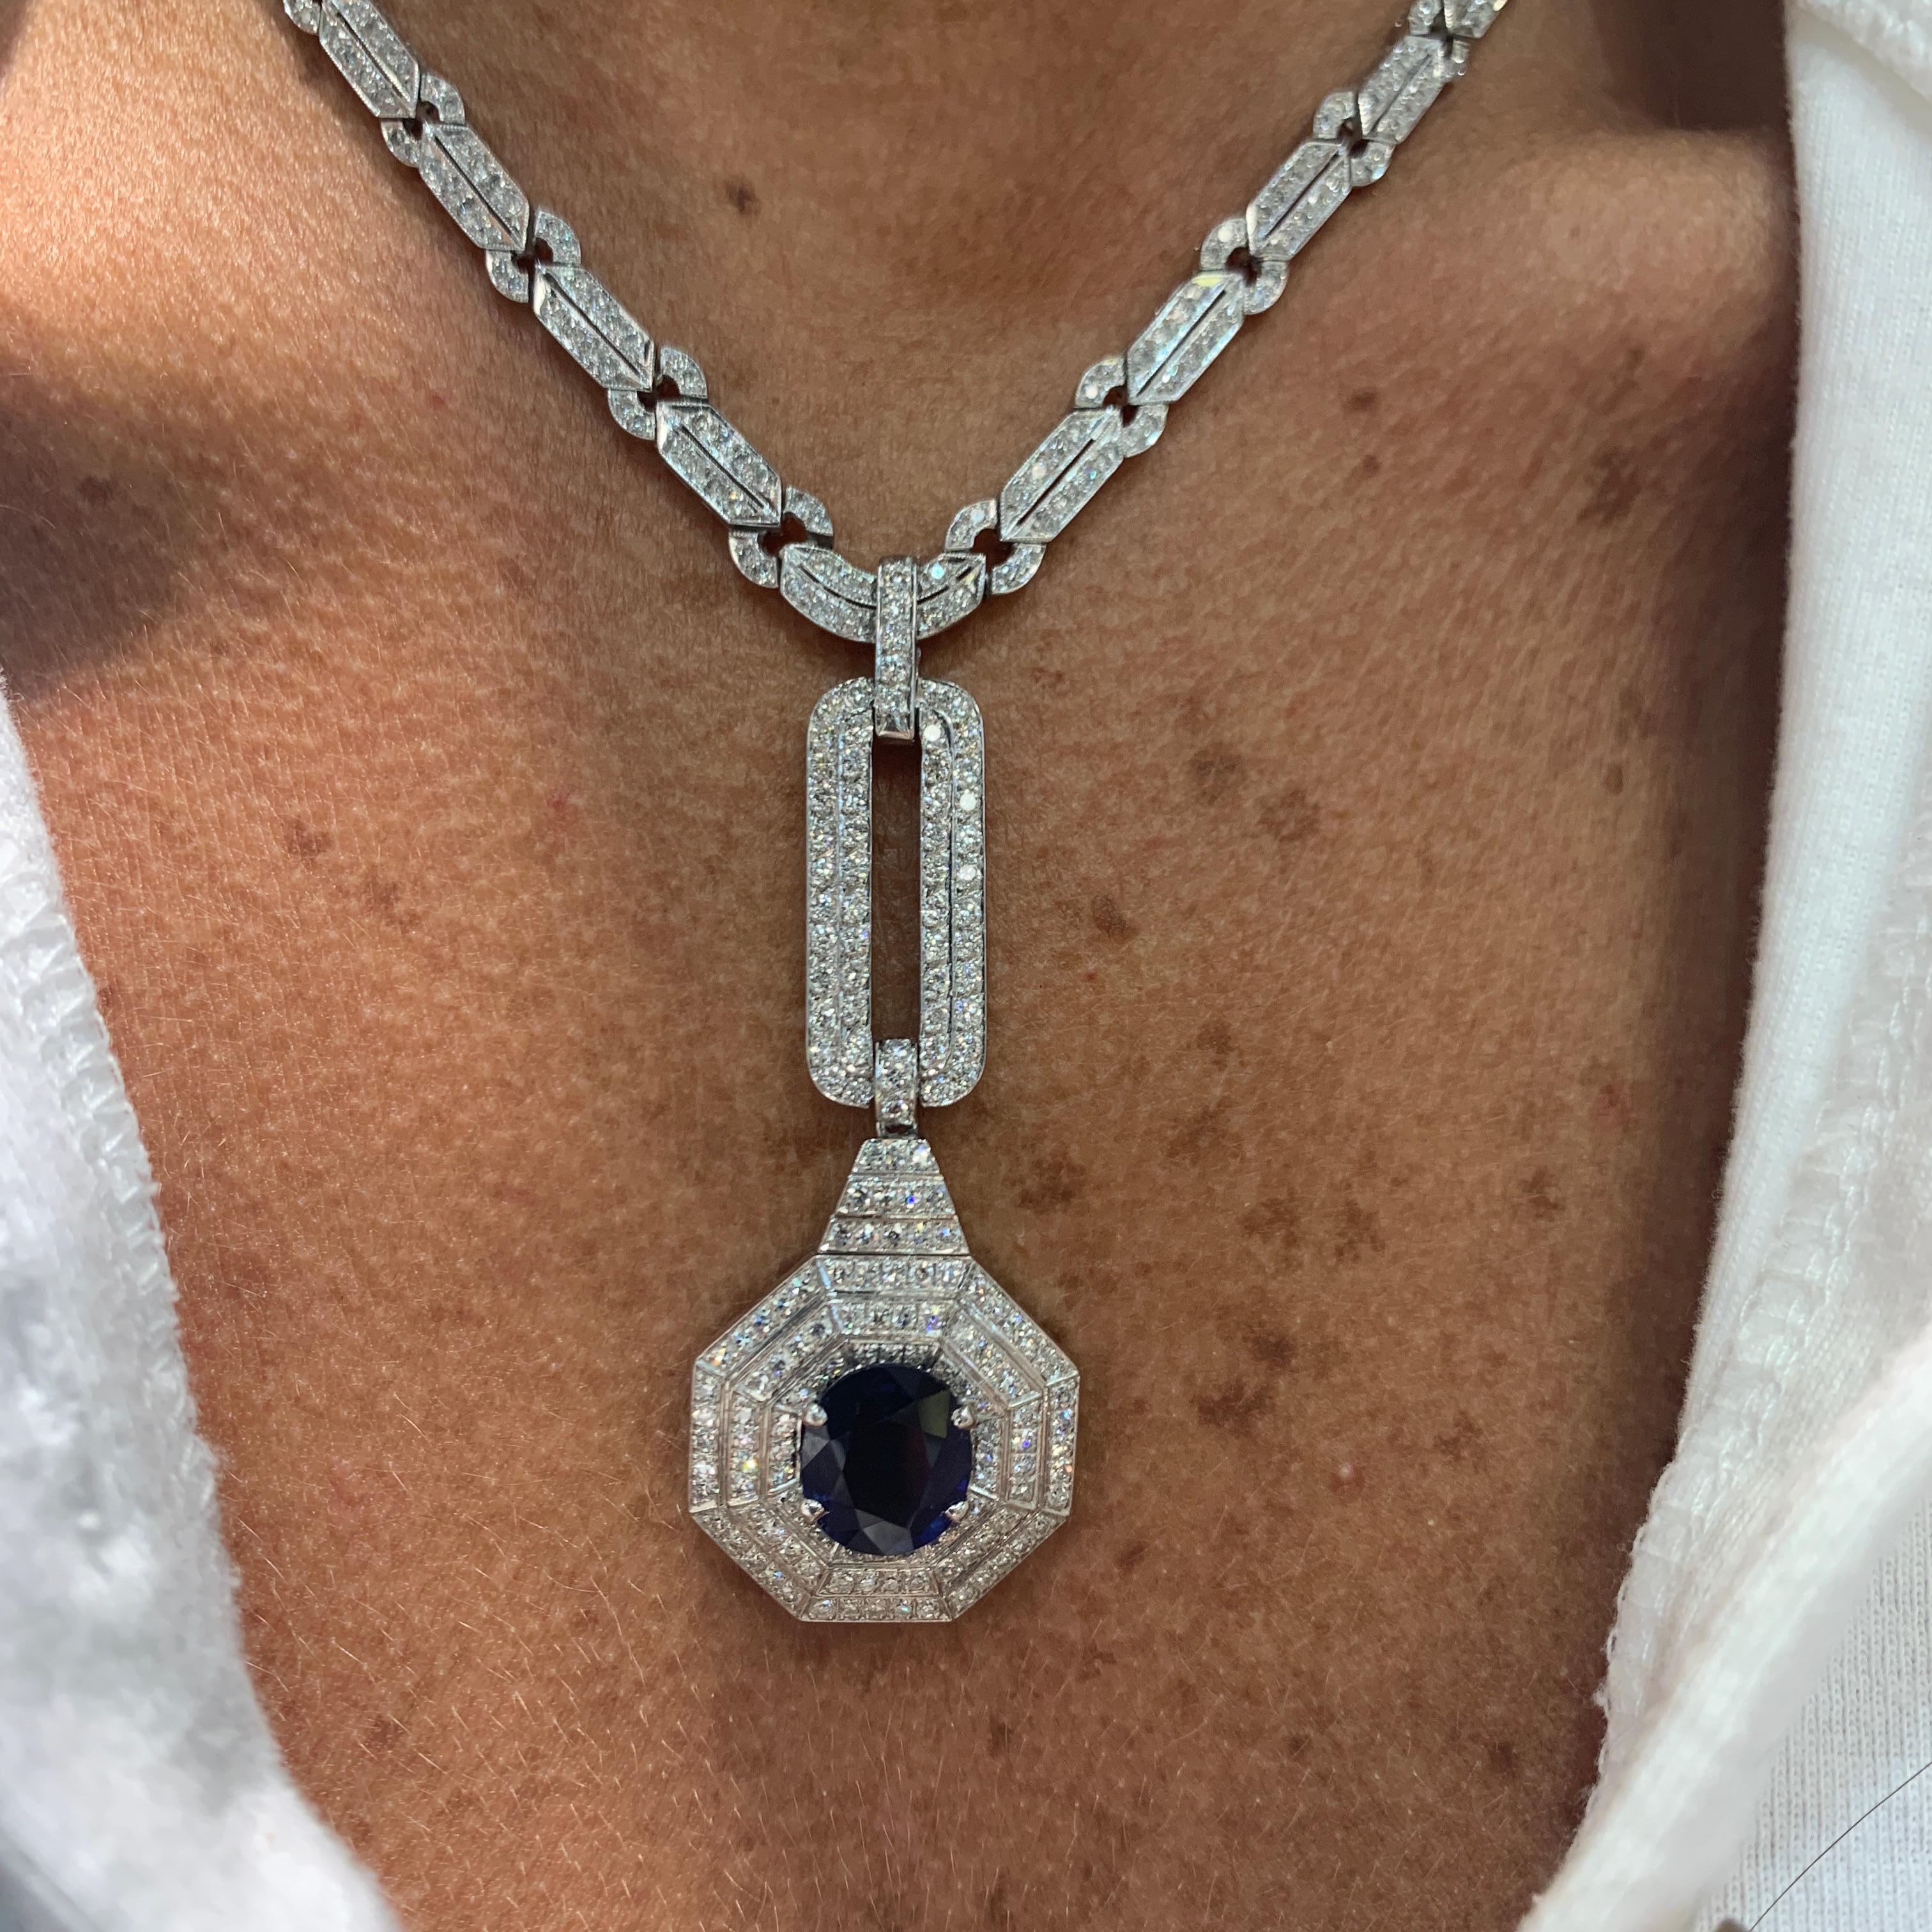 Sapphire & Diamond Drop Necklace 
1 Oval Cut Sapphire approximately  4 carats
563 Diamonds approximately 
Necklace Length: 15.5